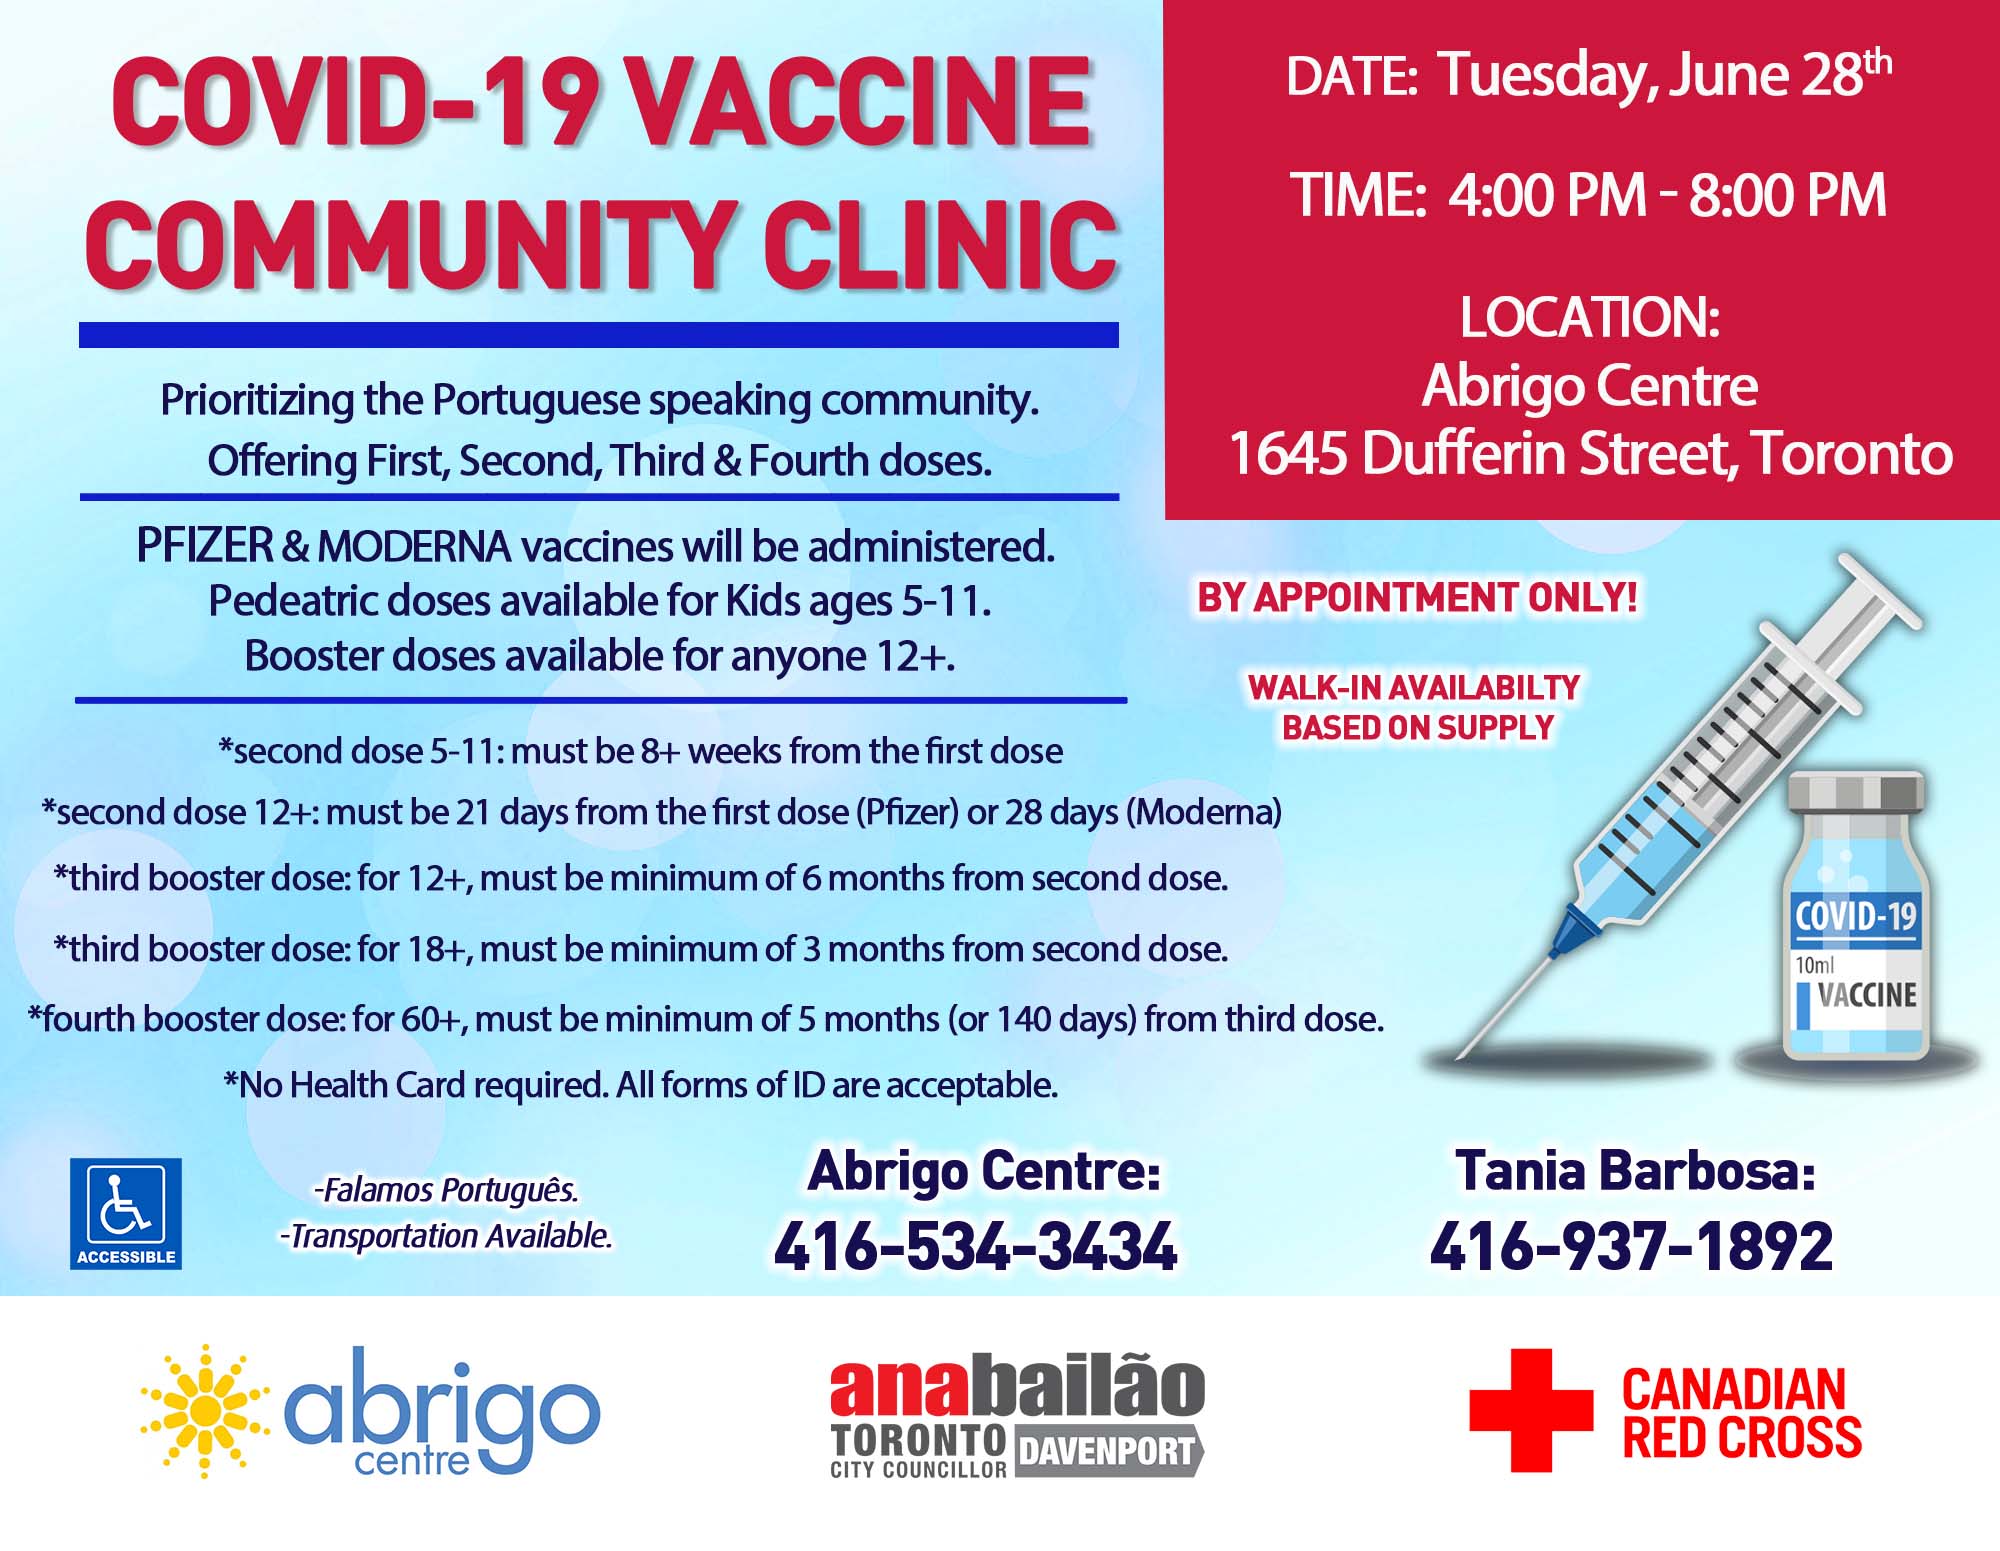 Abrigo’s Next COVID-19 Vaccination Clinic is June 28th